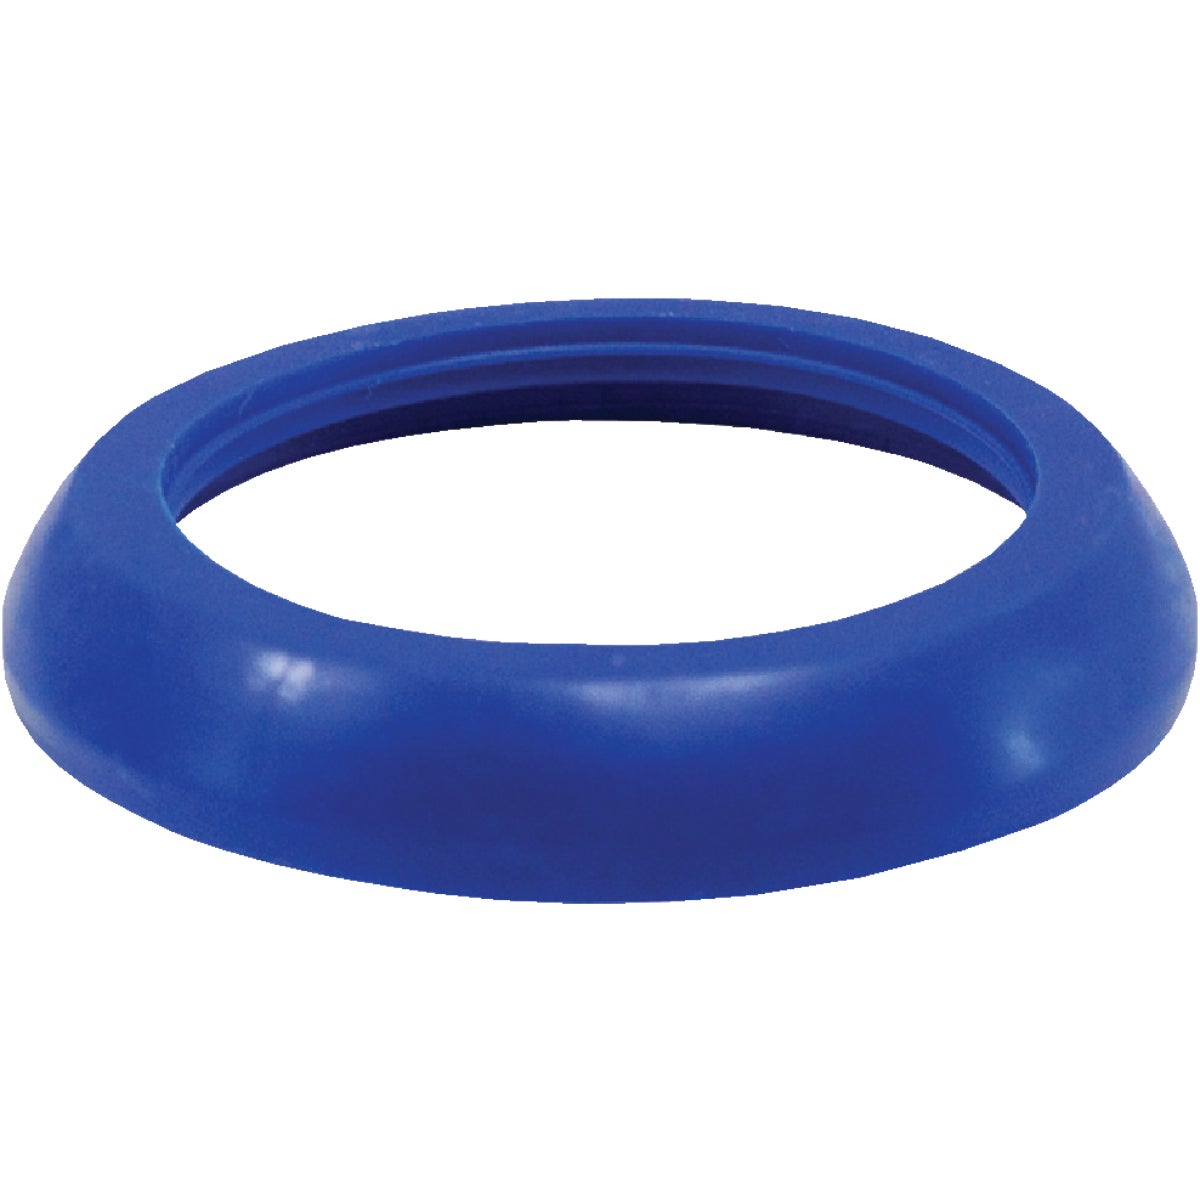 Jones Stephens 1-1/2 In. x 1-1/4 In. Blue Polyethylene Slip Joint Washer (100-Pack)